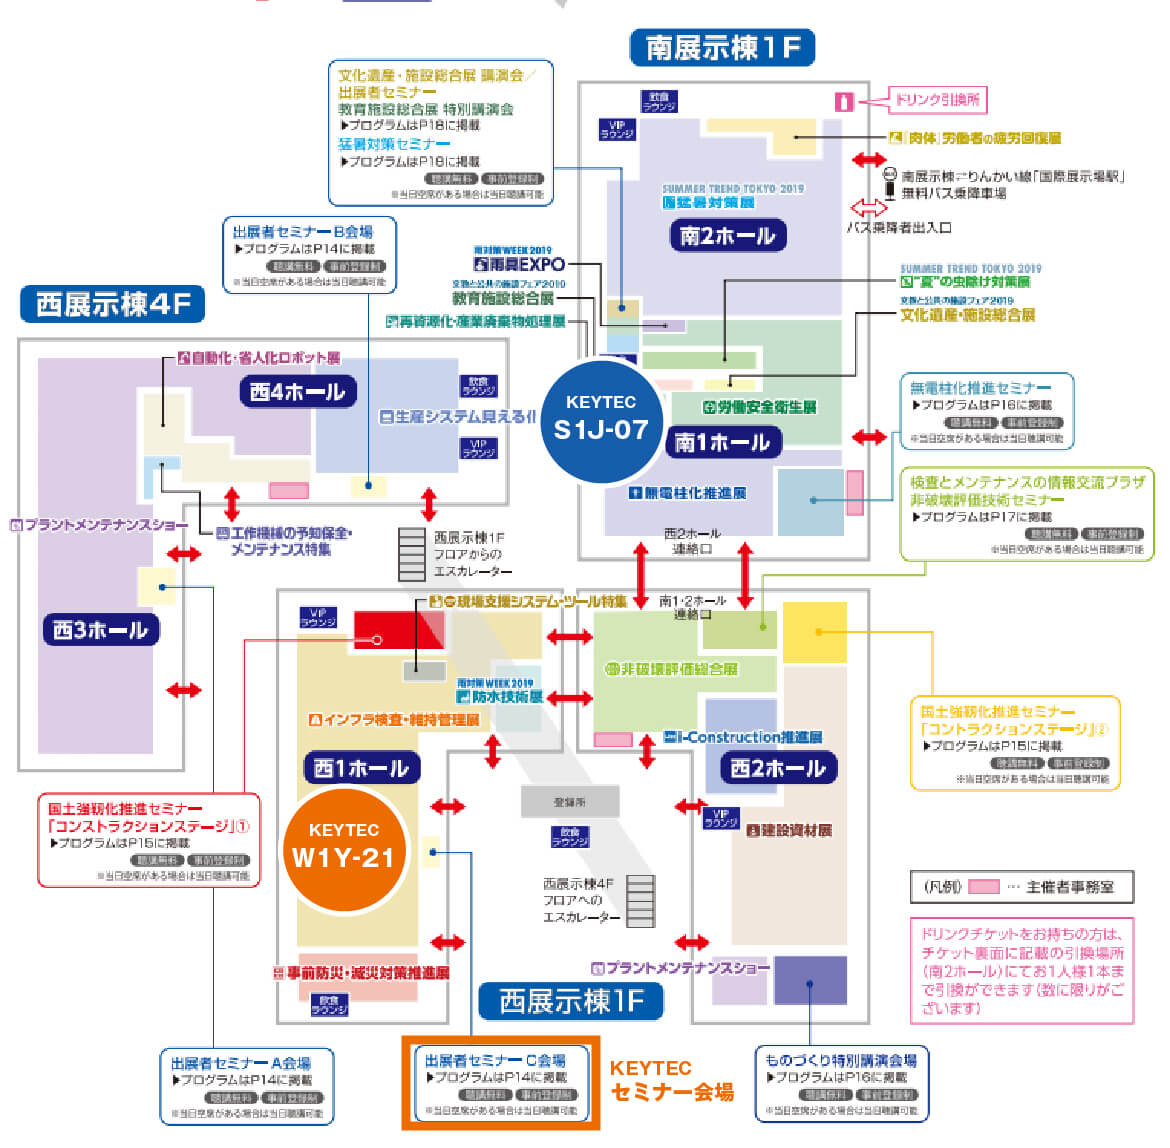 メンテナンス・レジリエンス東京2019 KEYTECブース位置